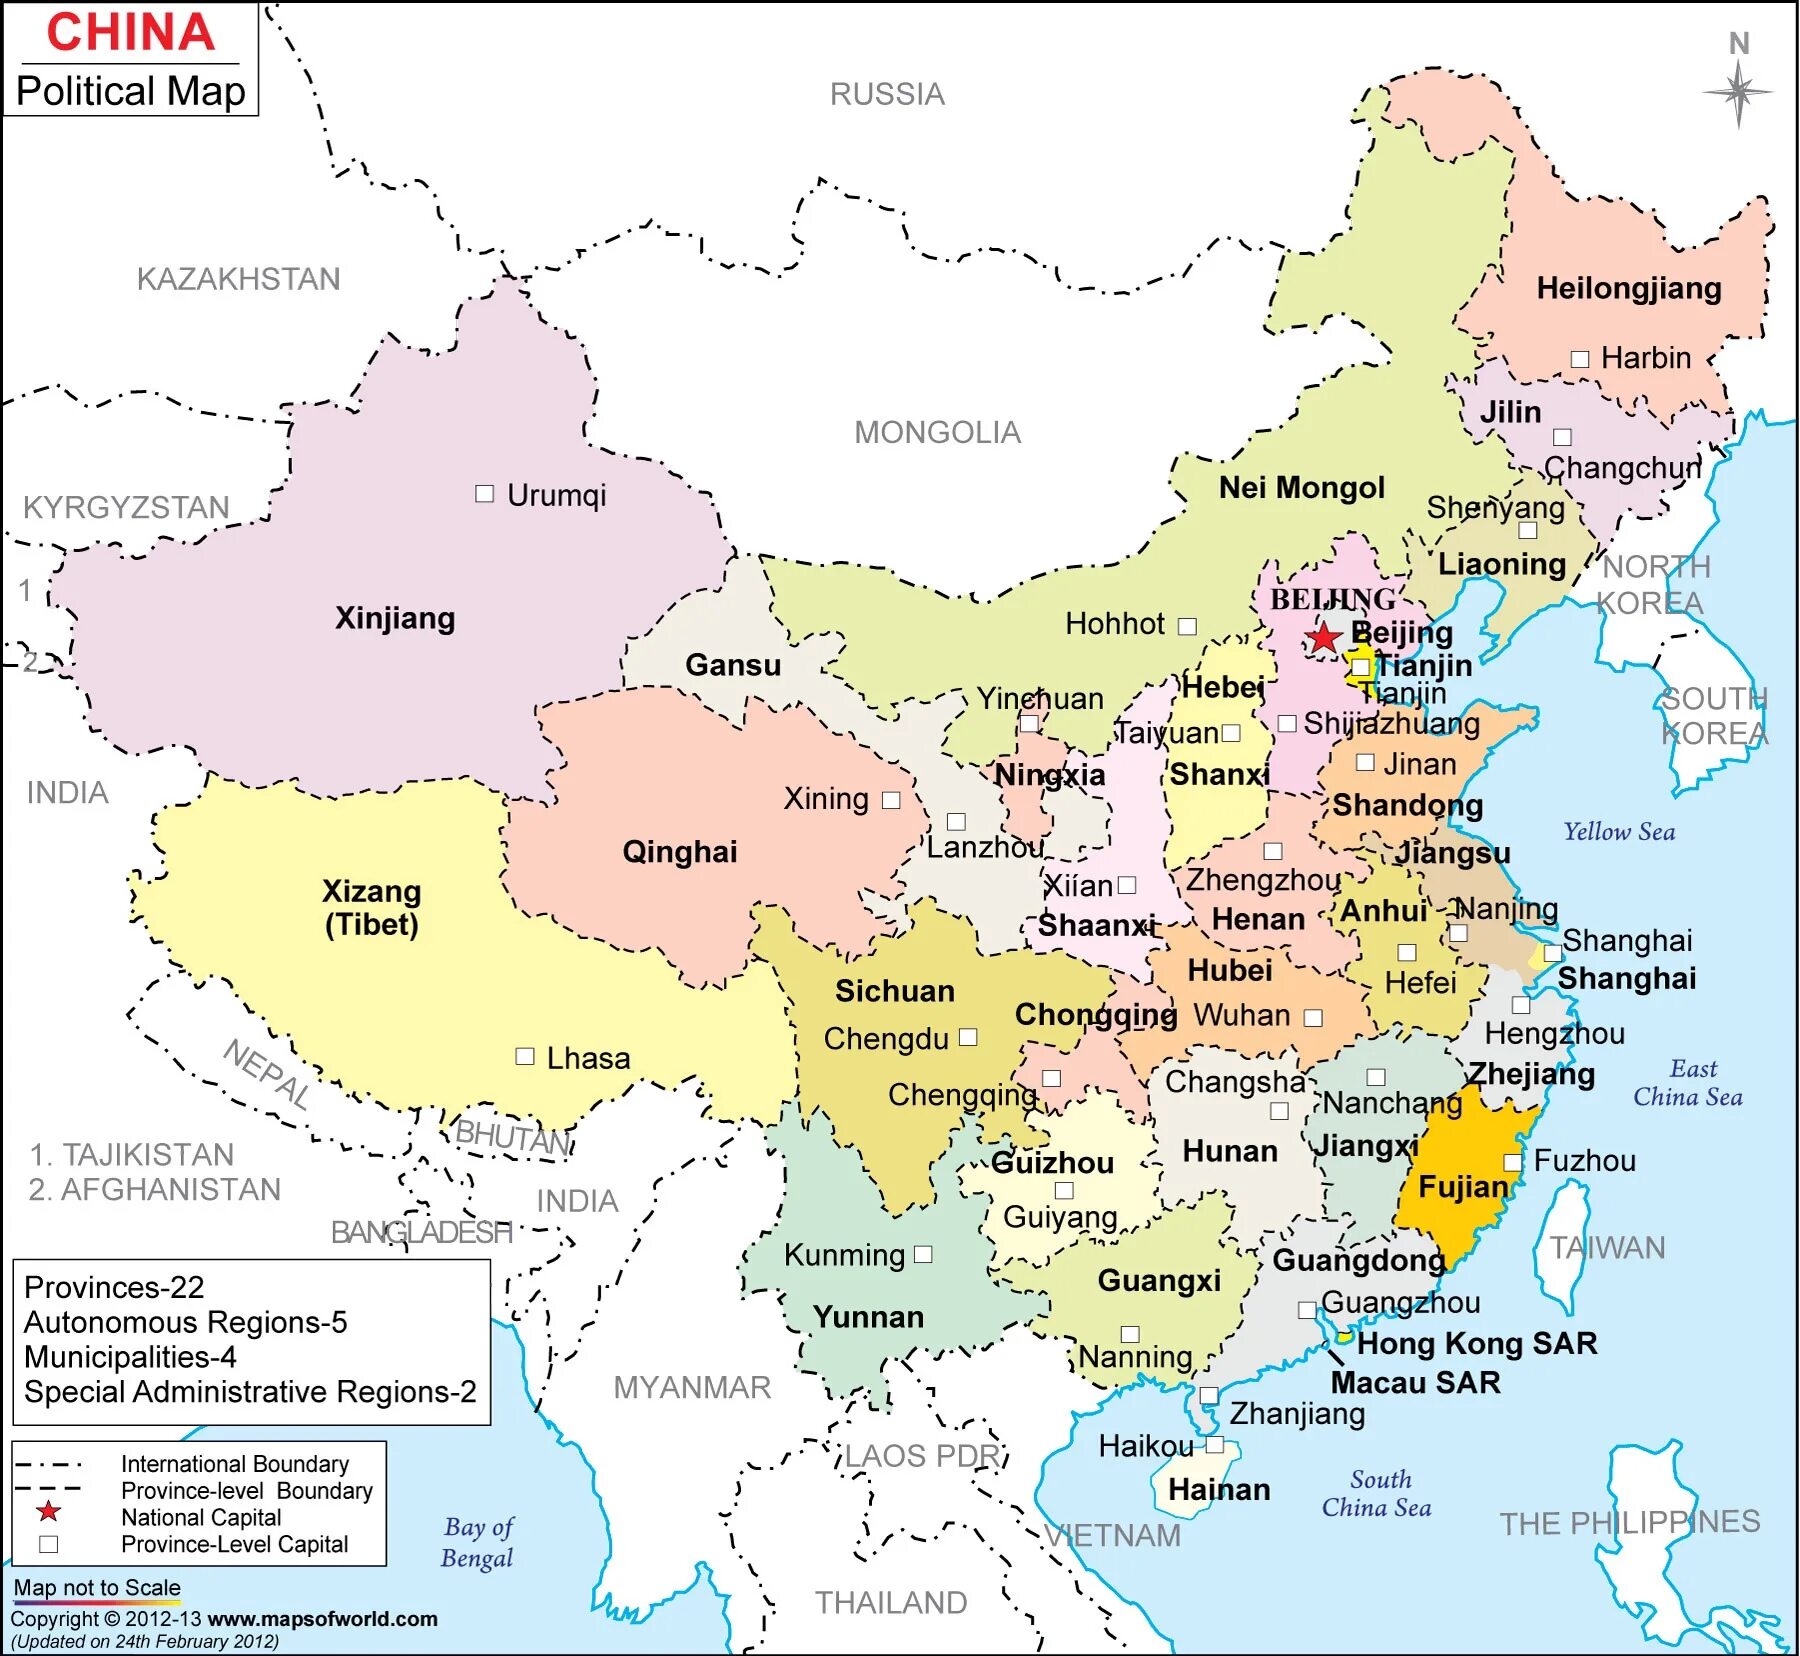 Map of china. Карта Китая. Карта КНР С провинциями. Карта Китая с провинциями на английском языке. Карта Китая с провинциями.